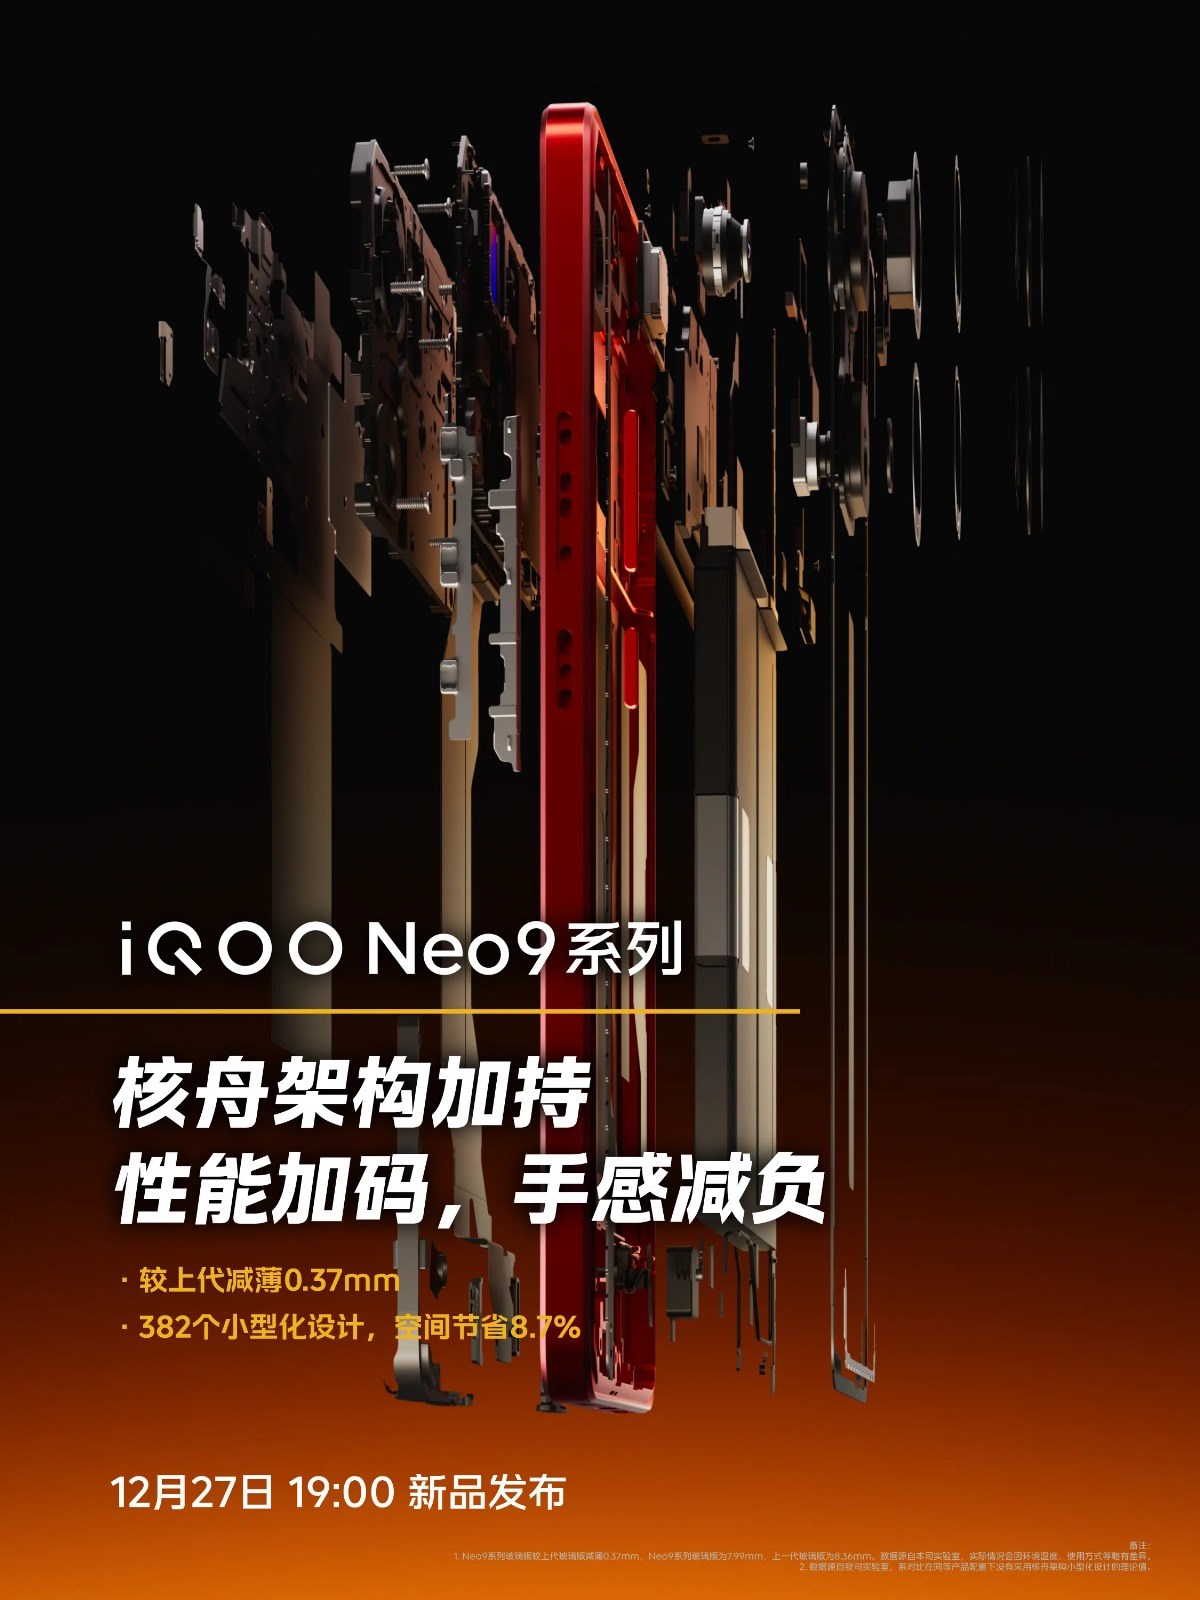 iQOO Neo 9 serisinin batarya özellikleri onaylandı